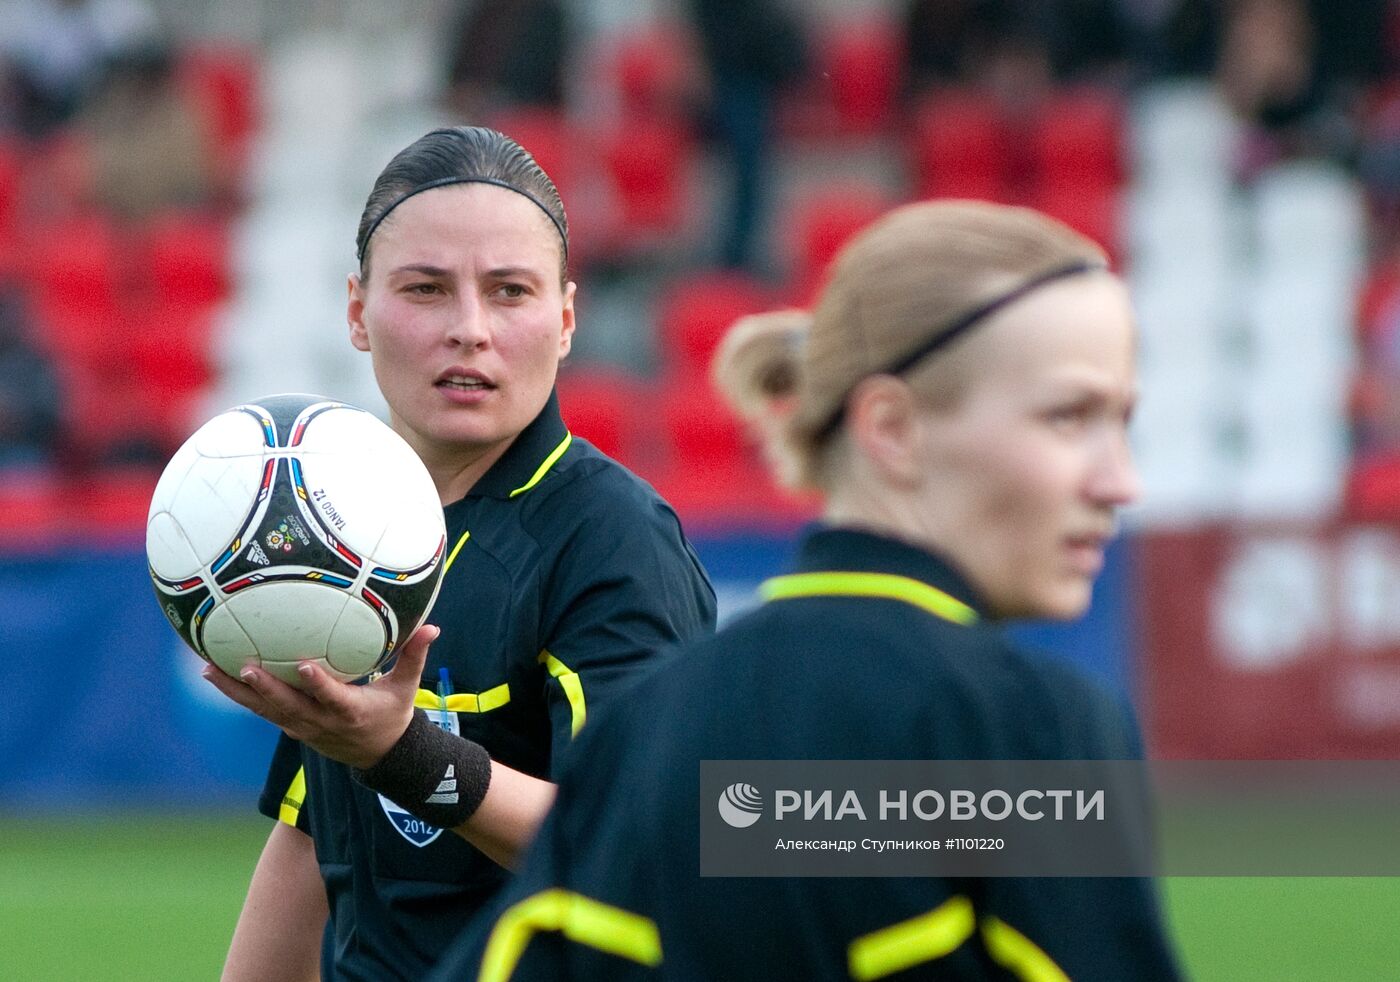 Женская бригада арбитров на матче Молодежного первенства России